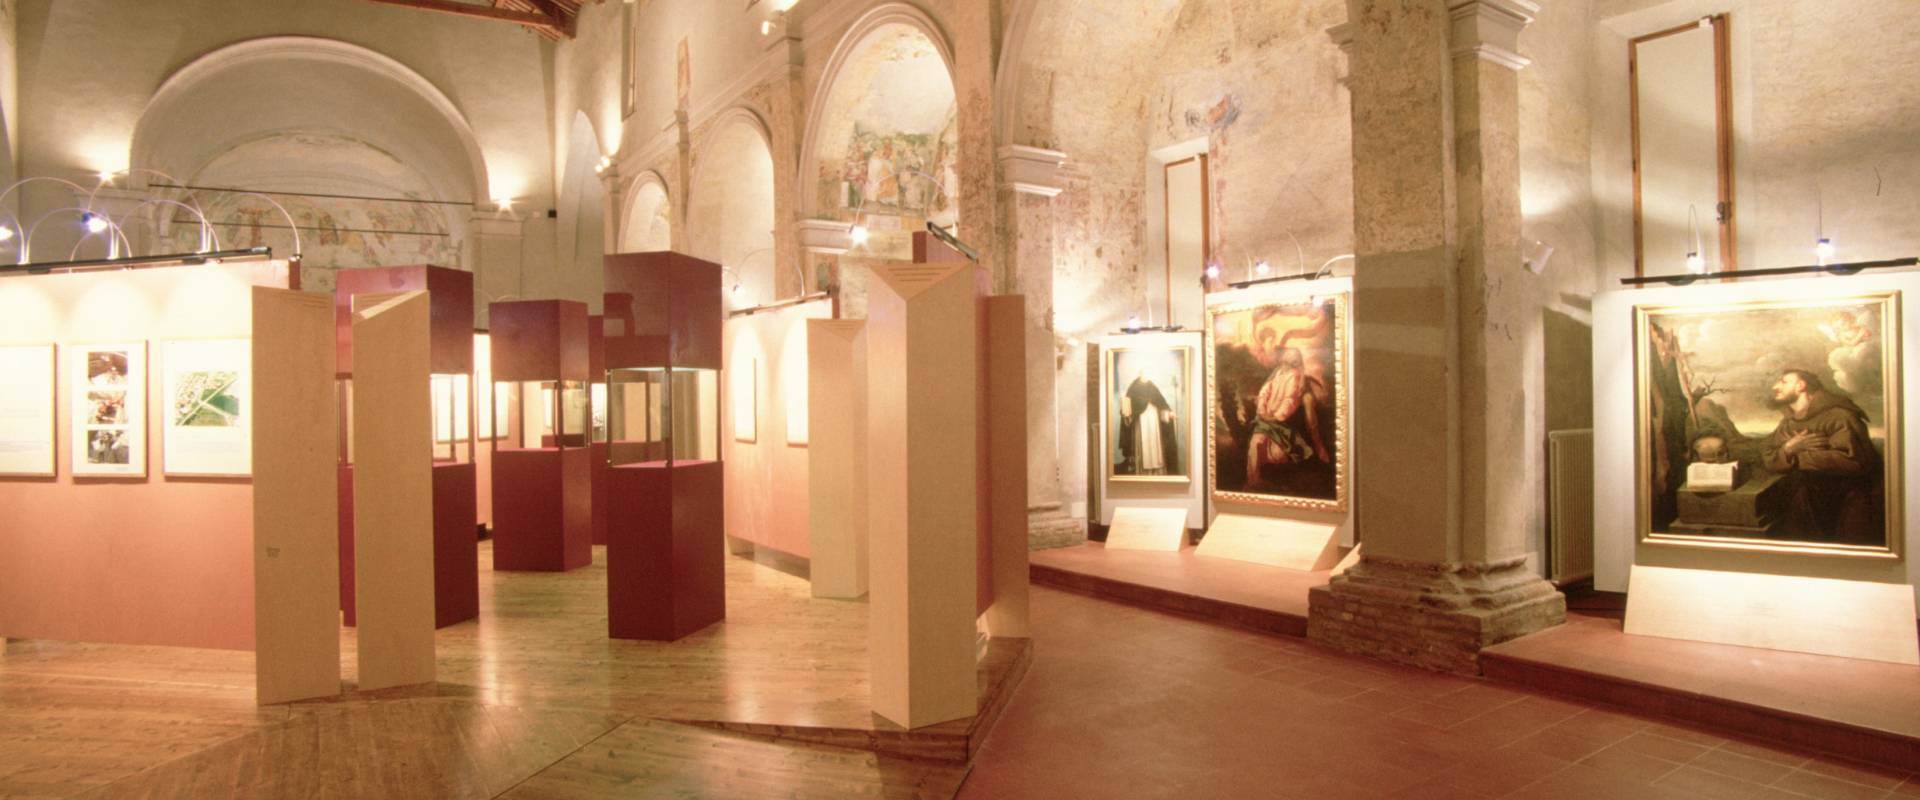 Museo Civico, interno foto di Samaritani